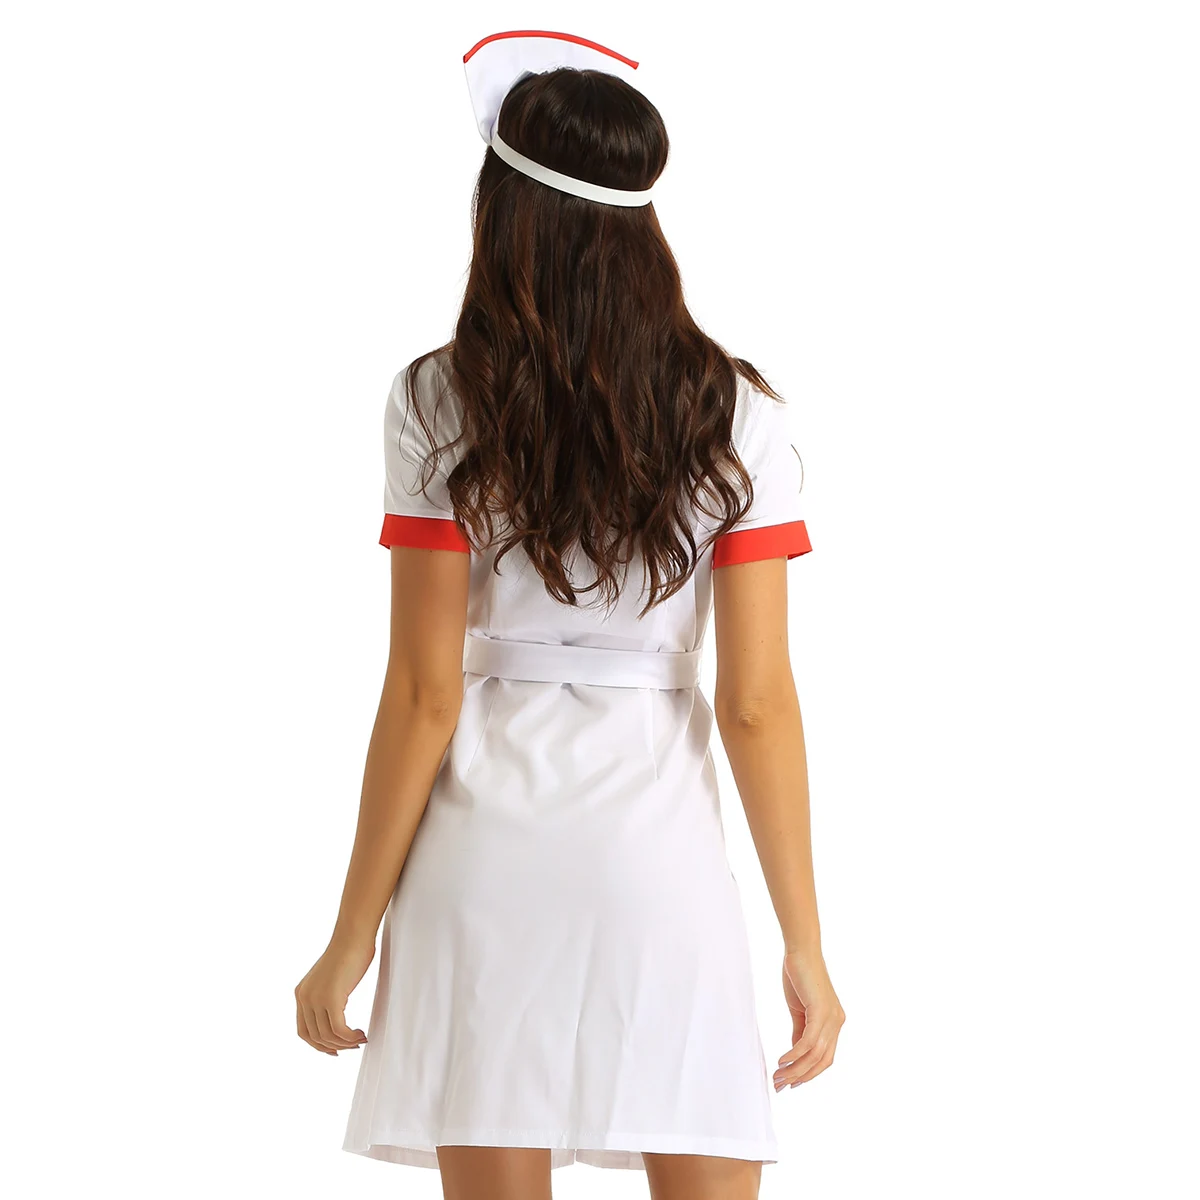 Женский сексуальный костюм медсестры воротник с отворотом короткий рукав кнопка вниз женское нарядное платье униформа с поясом и шляпой взрослый наряд на Хэллоуин